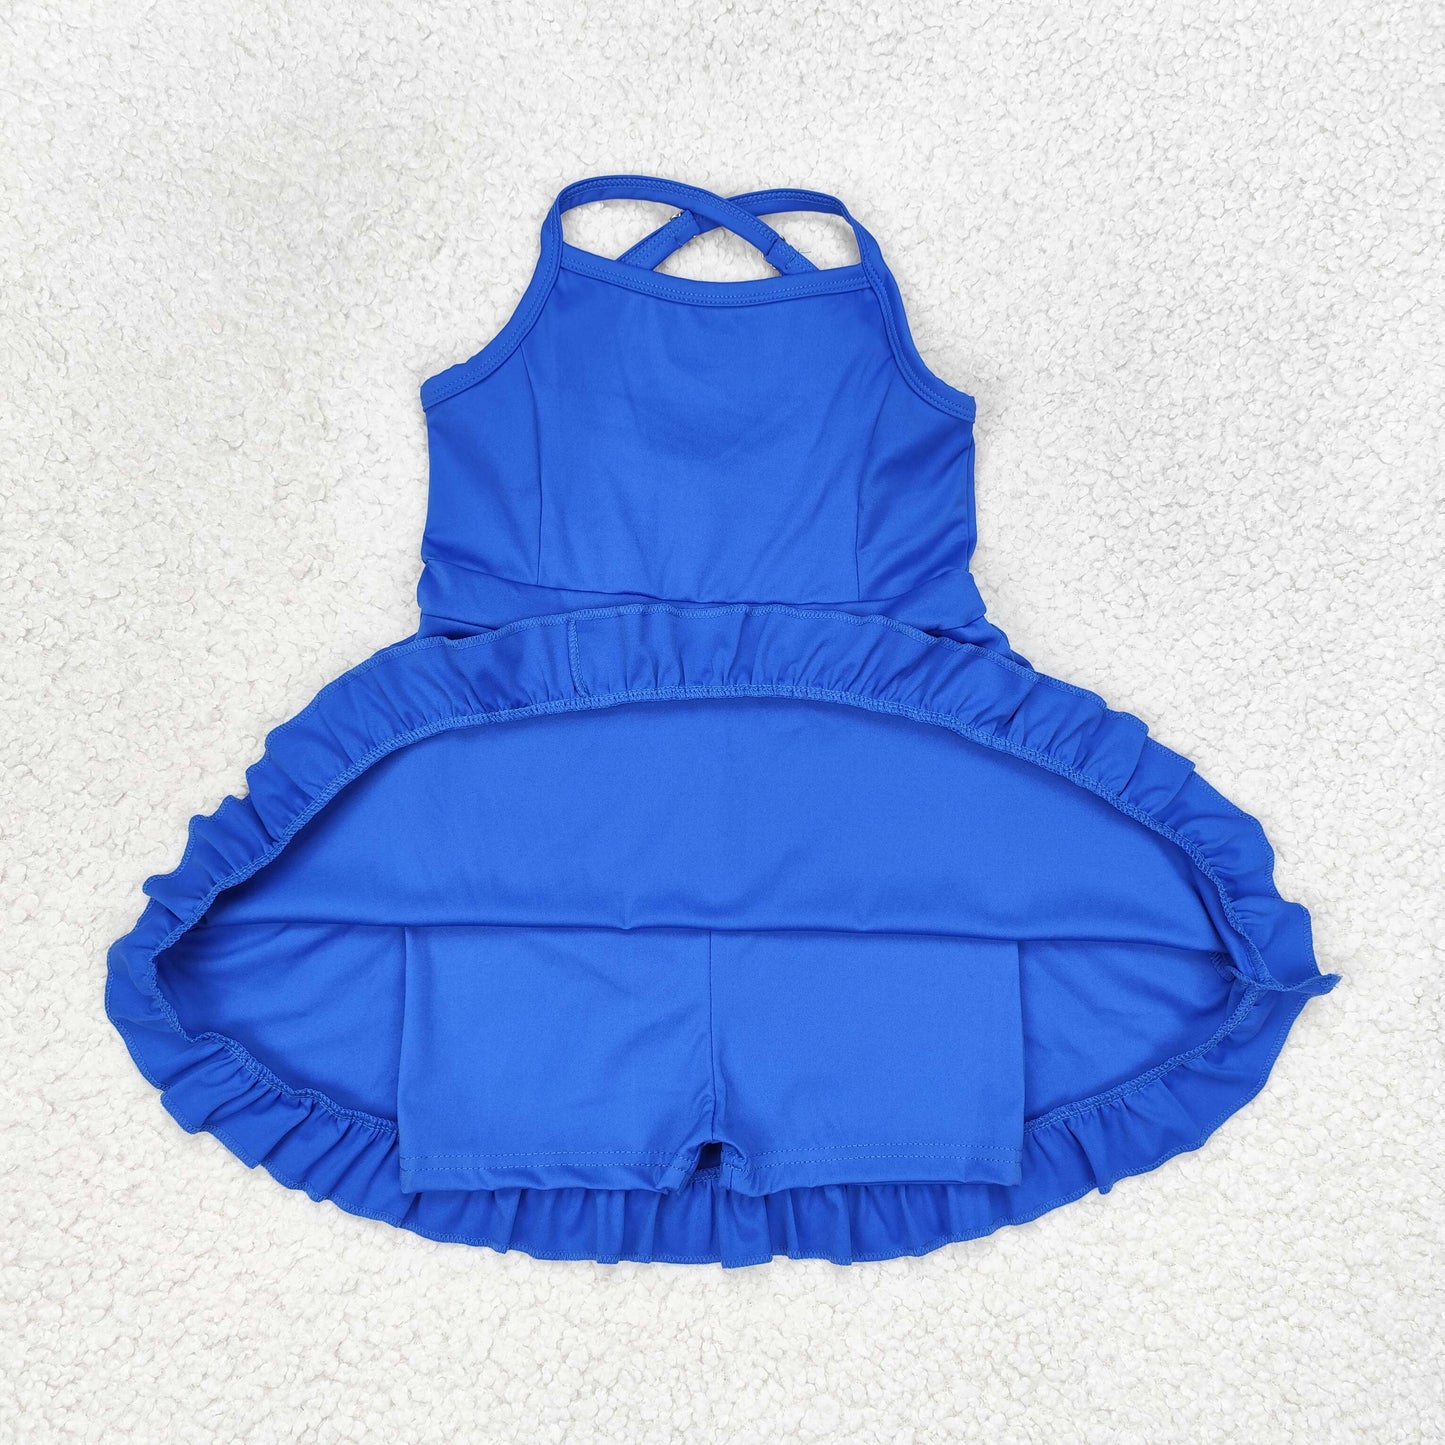 rts no moq S0445 Pure blue sportswear skirt swimsuit